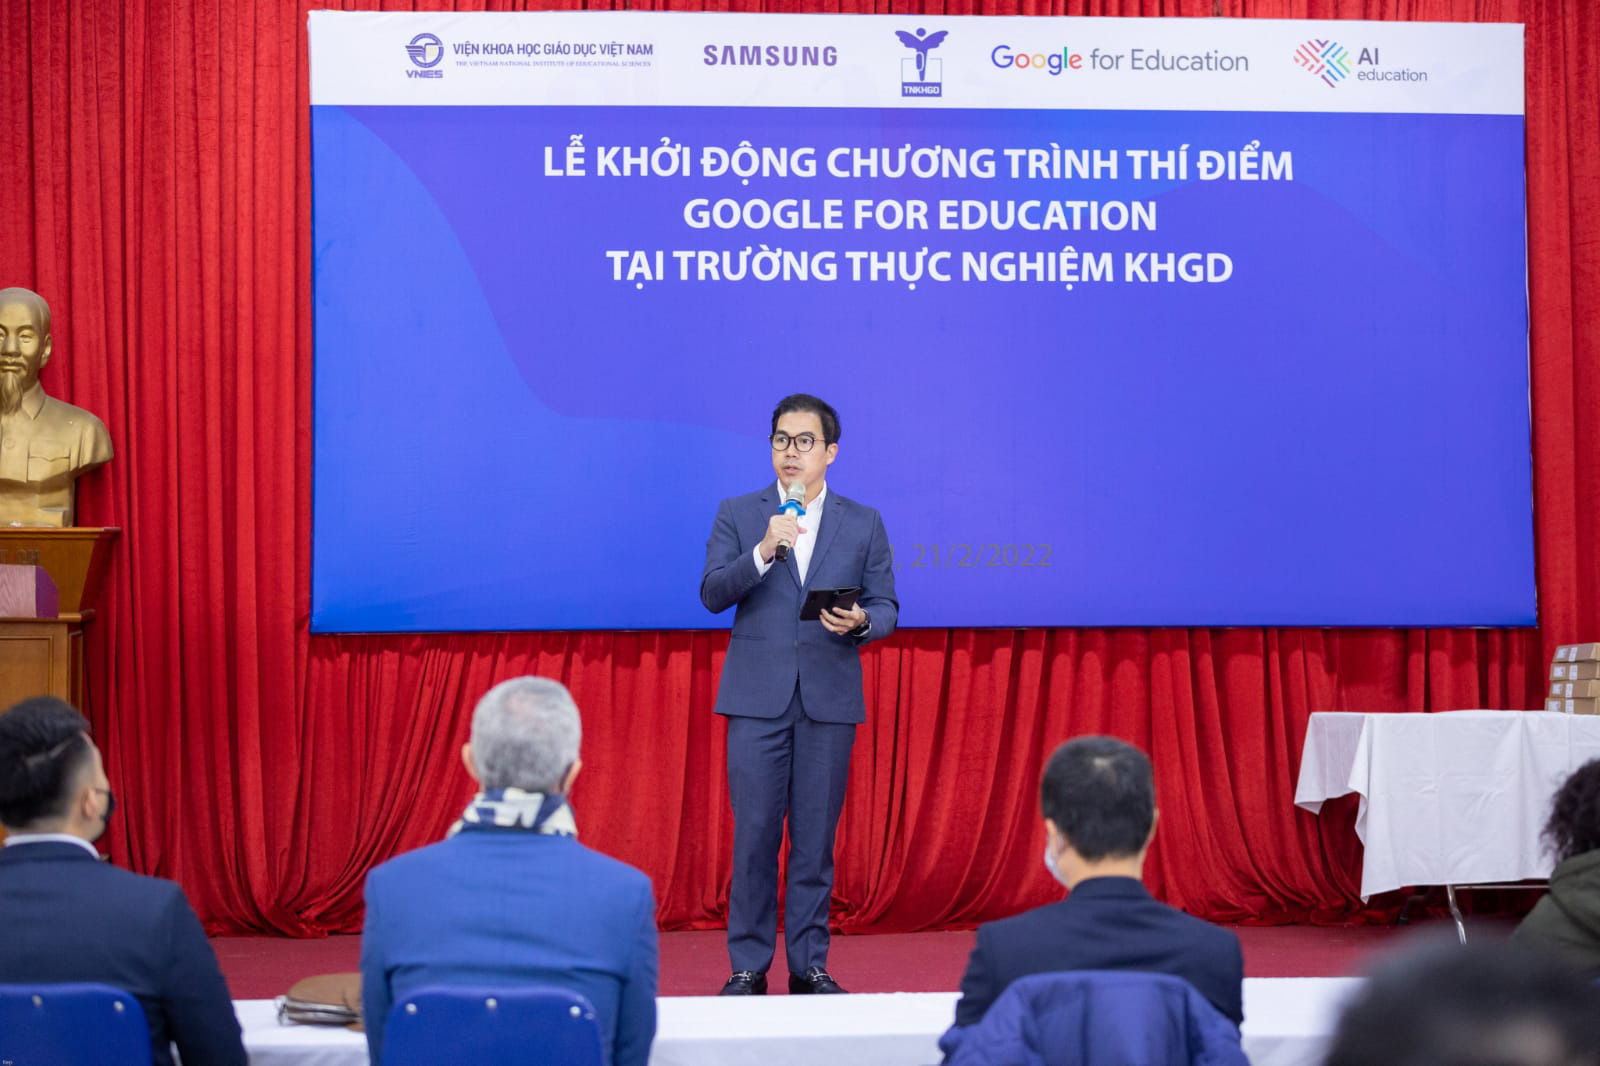 Samsung hợp tác với Google, tăng cường chuyển đổi số trong giáo dục tại một số trường học ở Việt Nam - Ảnh 2.